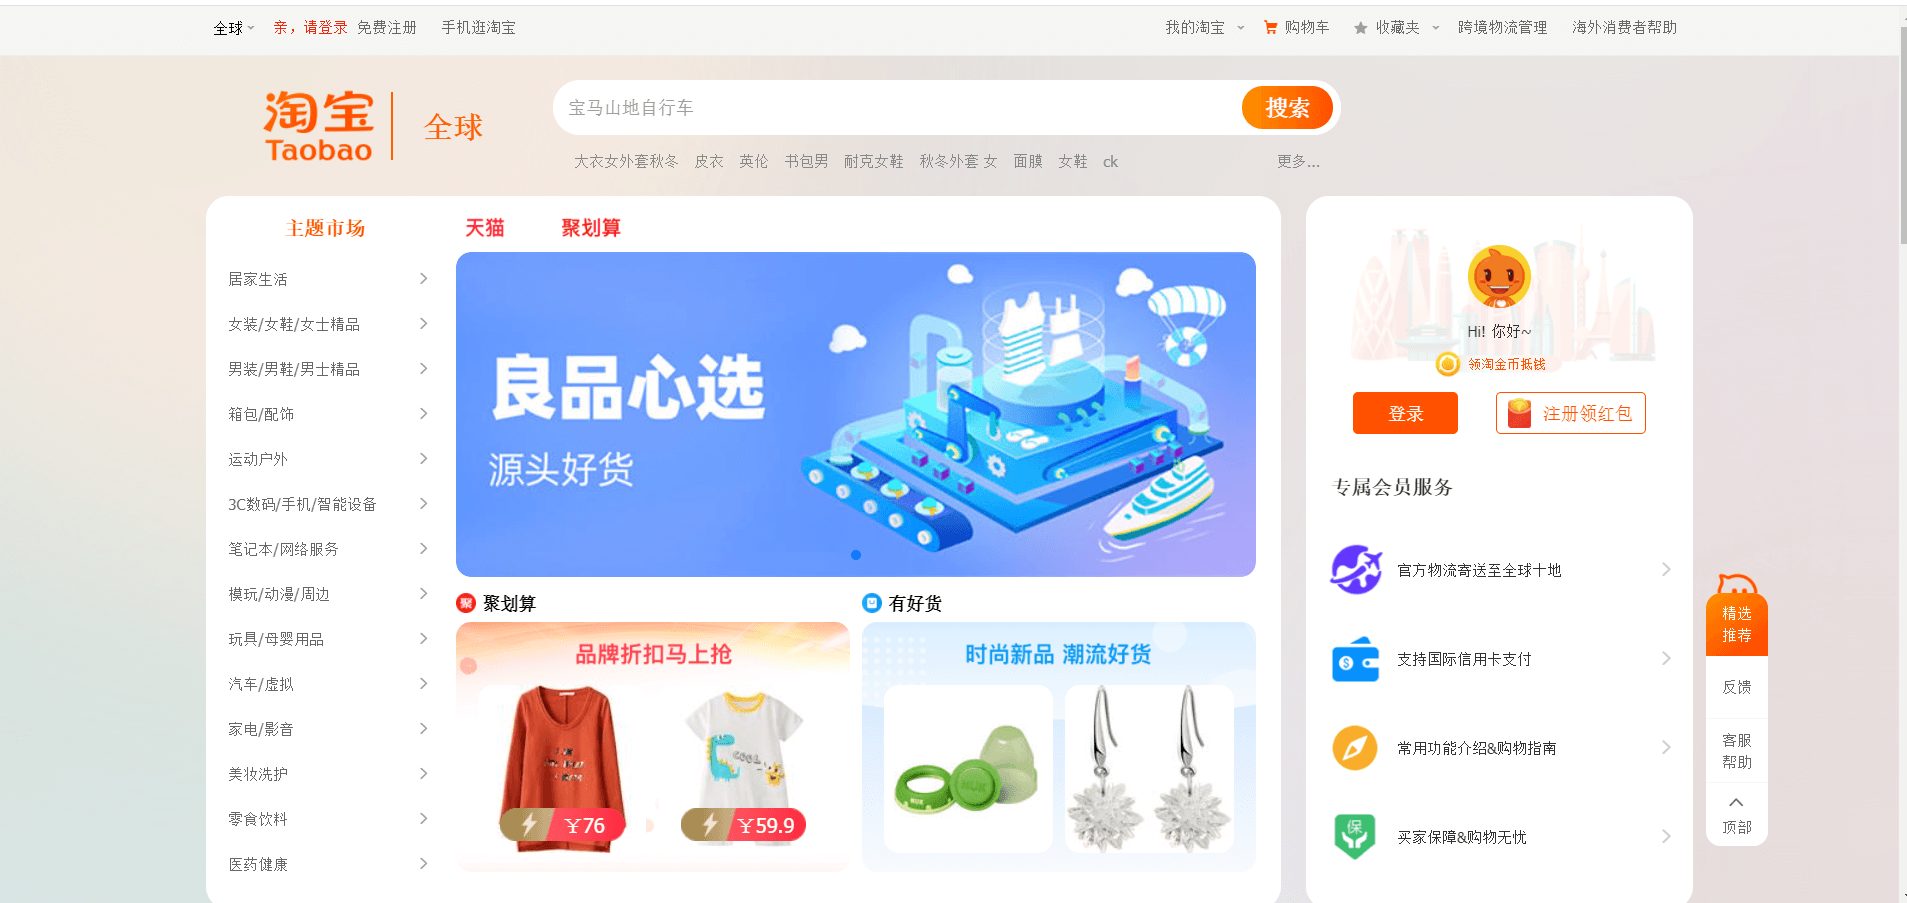 Hướng dẫn đặt hàng linh kiện điện tử Trung Quốc tại taobao